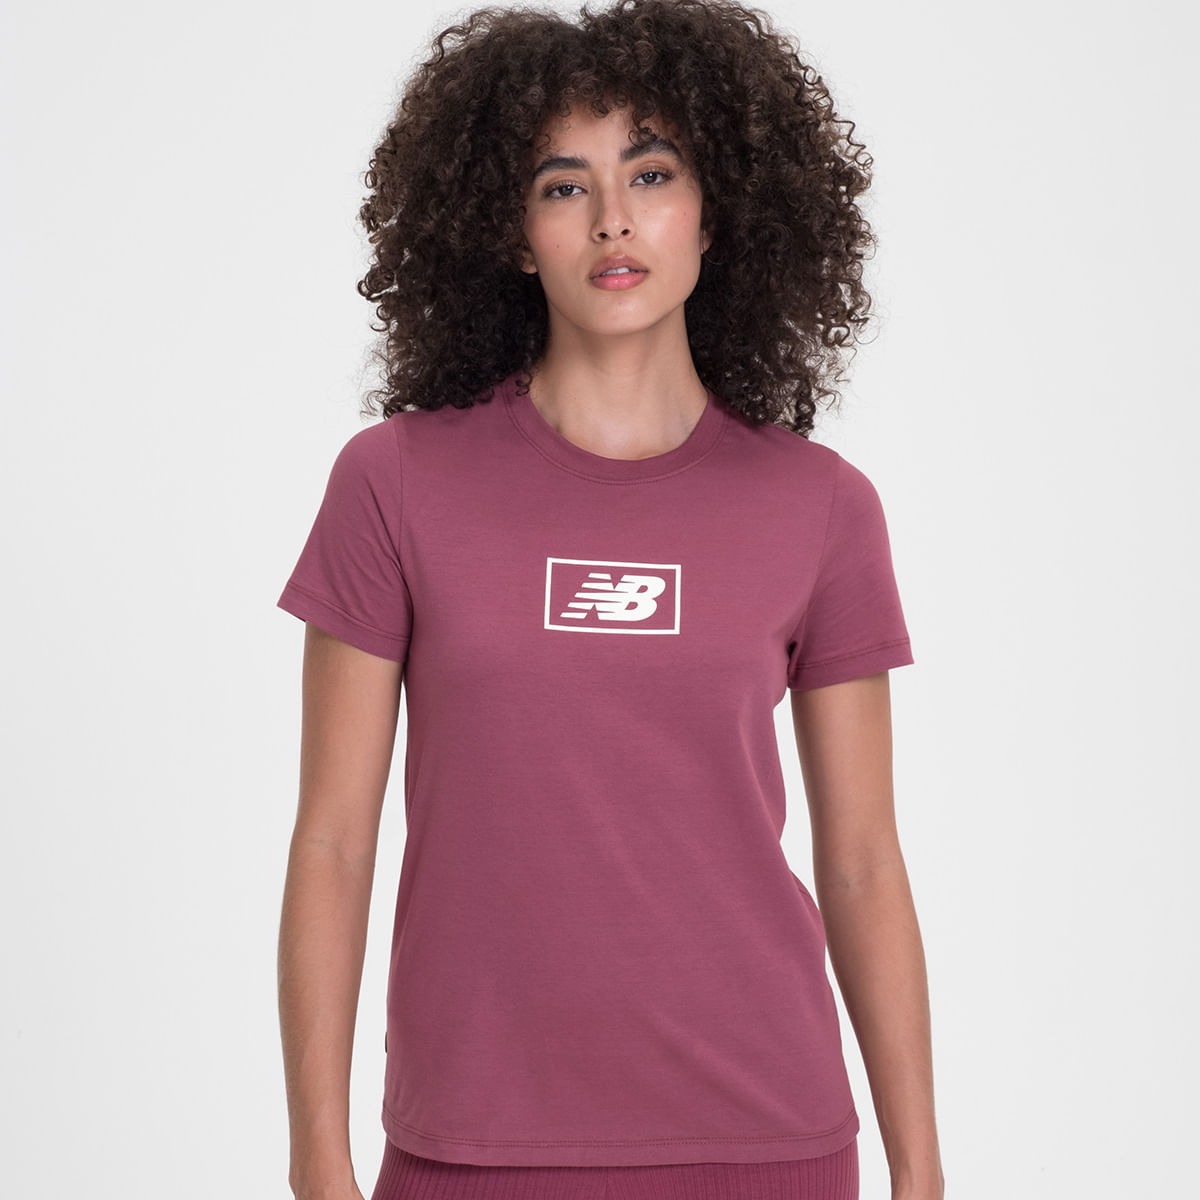 Camiseta New Balance Relentless Print Feminina 1136671 - Roxo